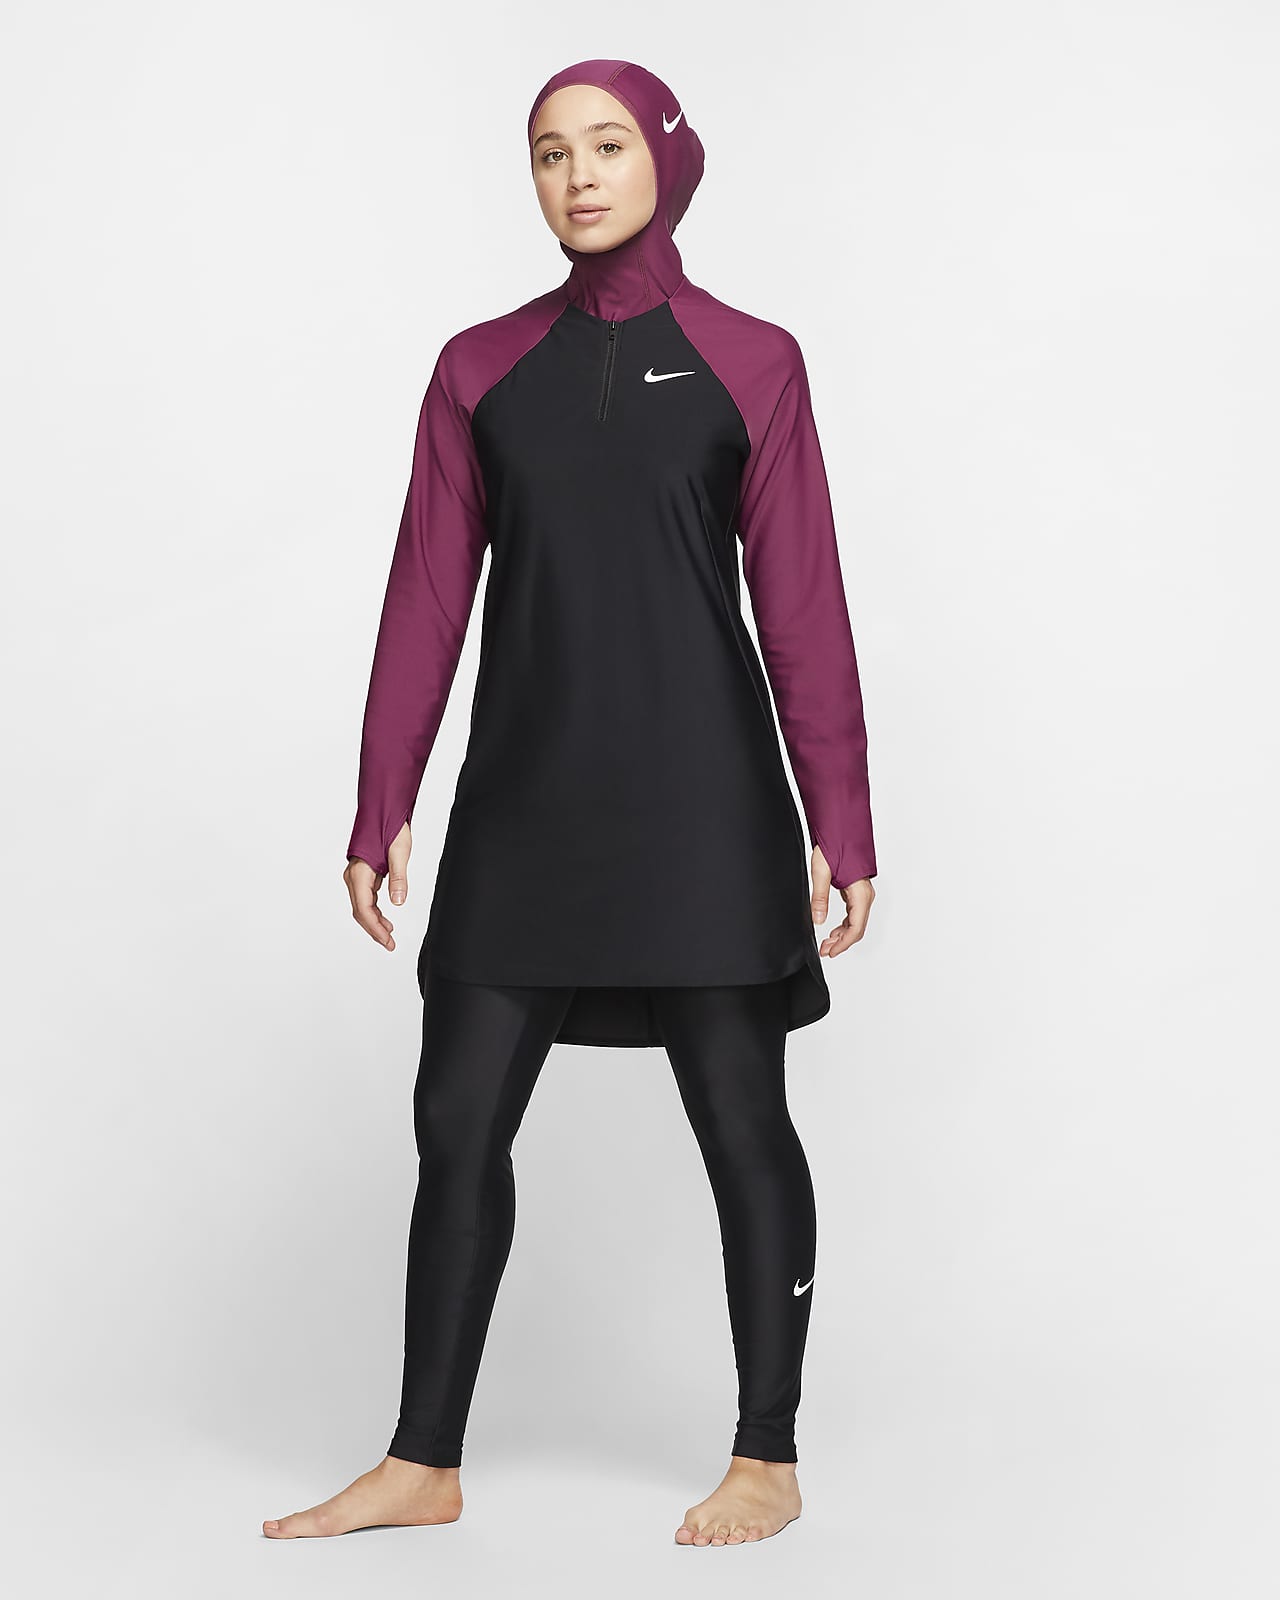 Nike Victory teljes fedésű karcsúsított női fürdő leggings